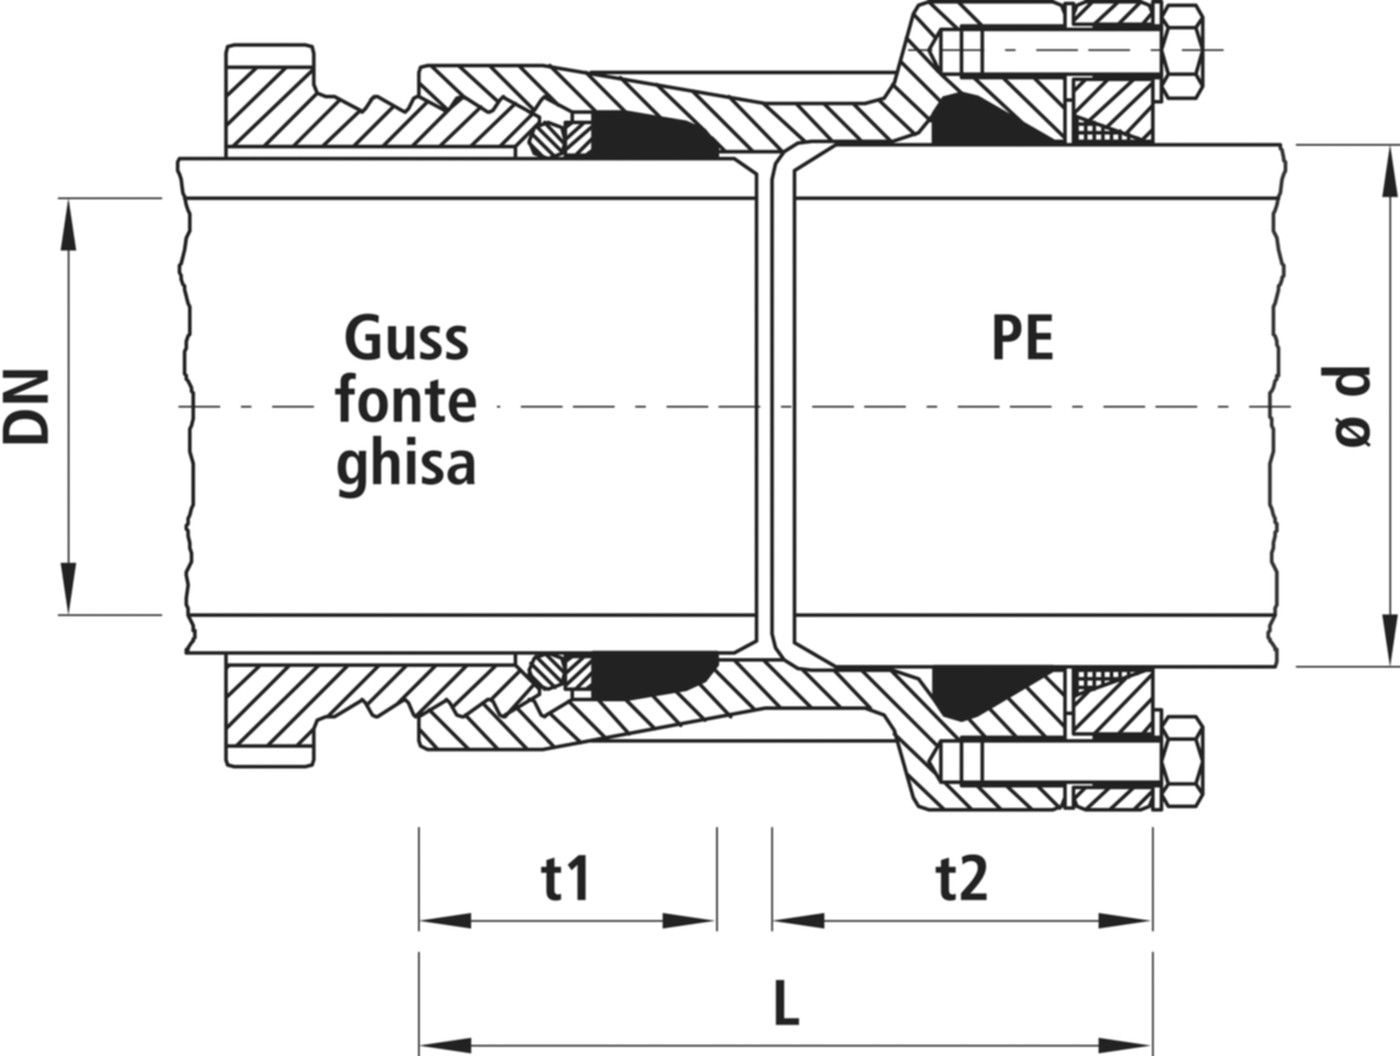 Verbinder Guss/PE, für Wasser 7230 DN 150 / d 180mm - Hawle System 2000